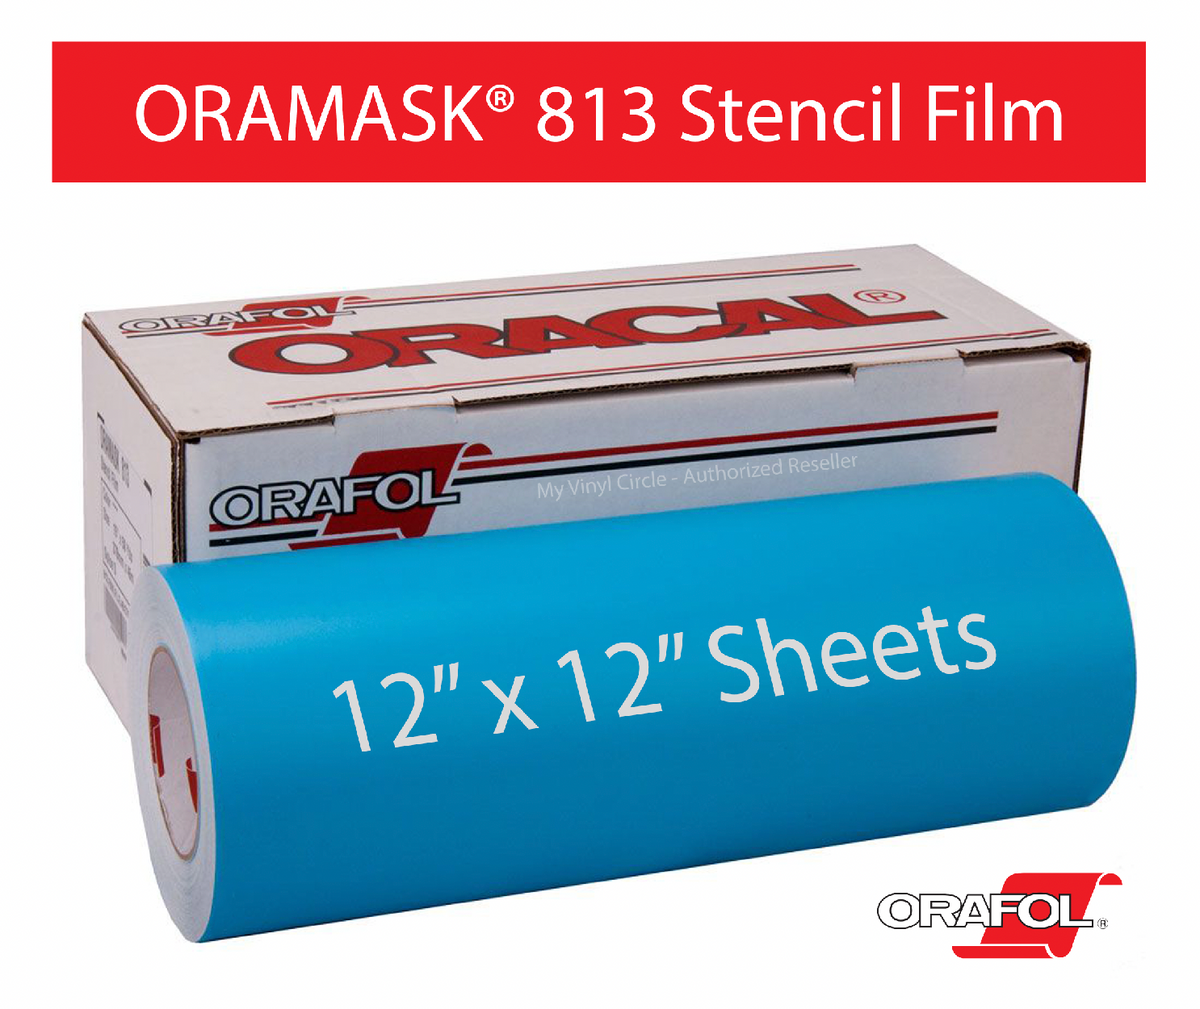 ORAMASK 813 Stencil Film